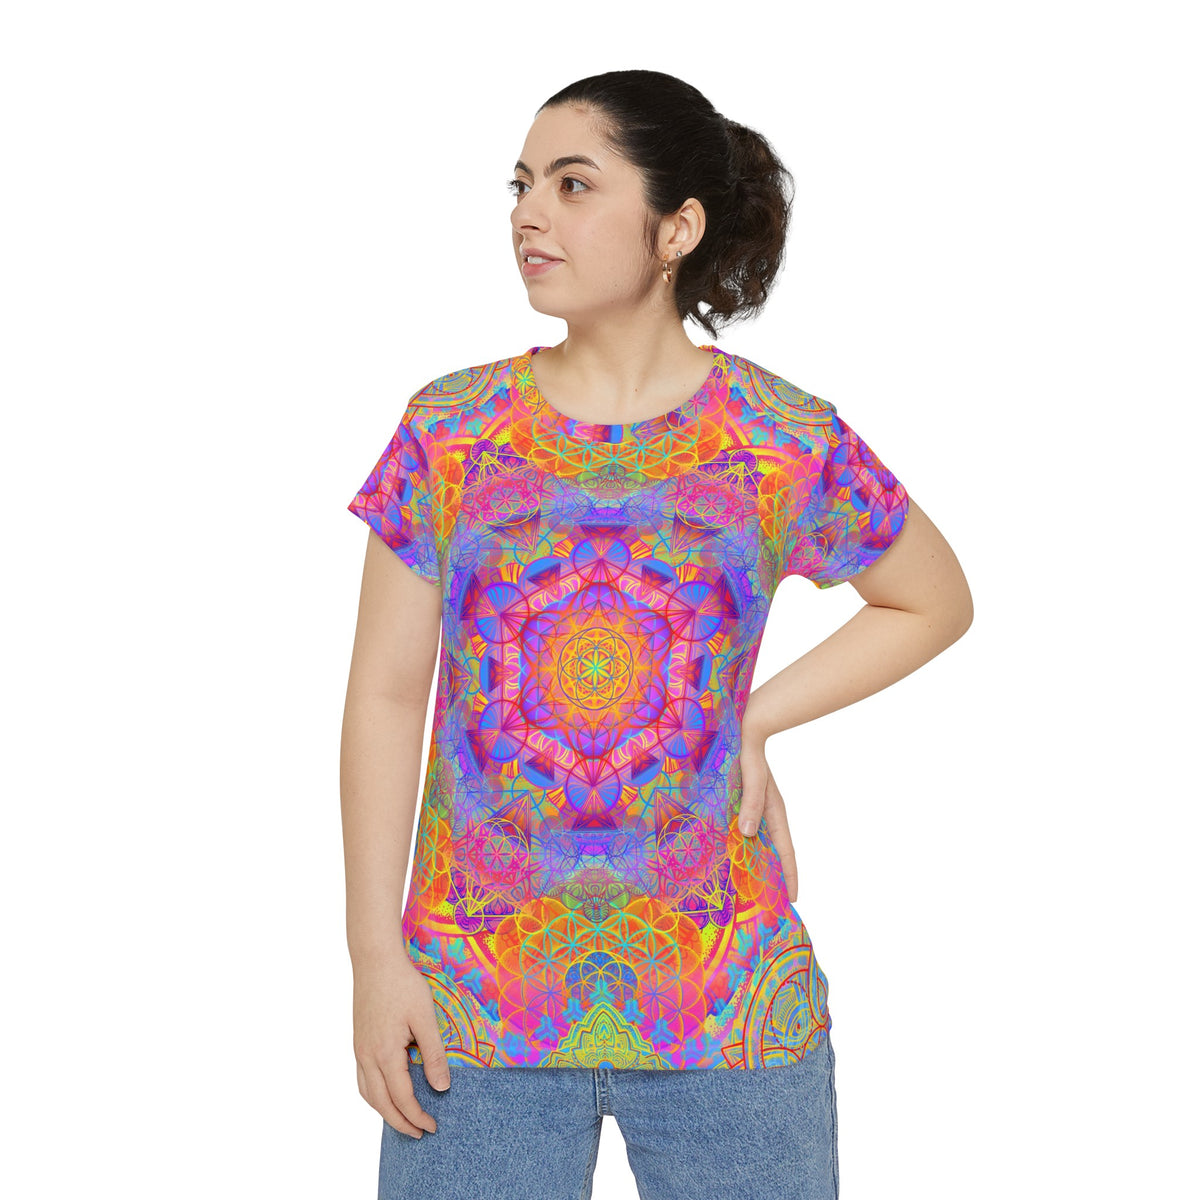 Sunrise Mandala - Women's Short Sleeve Shirt